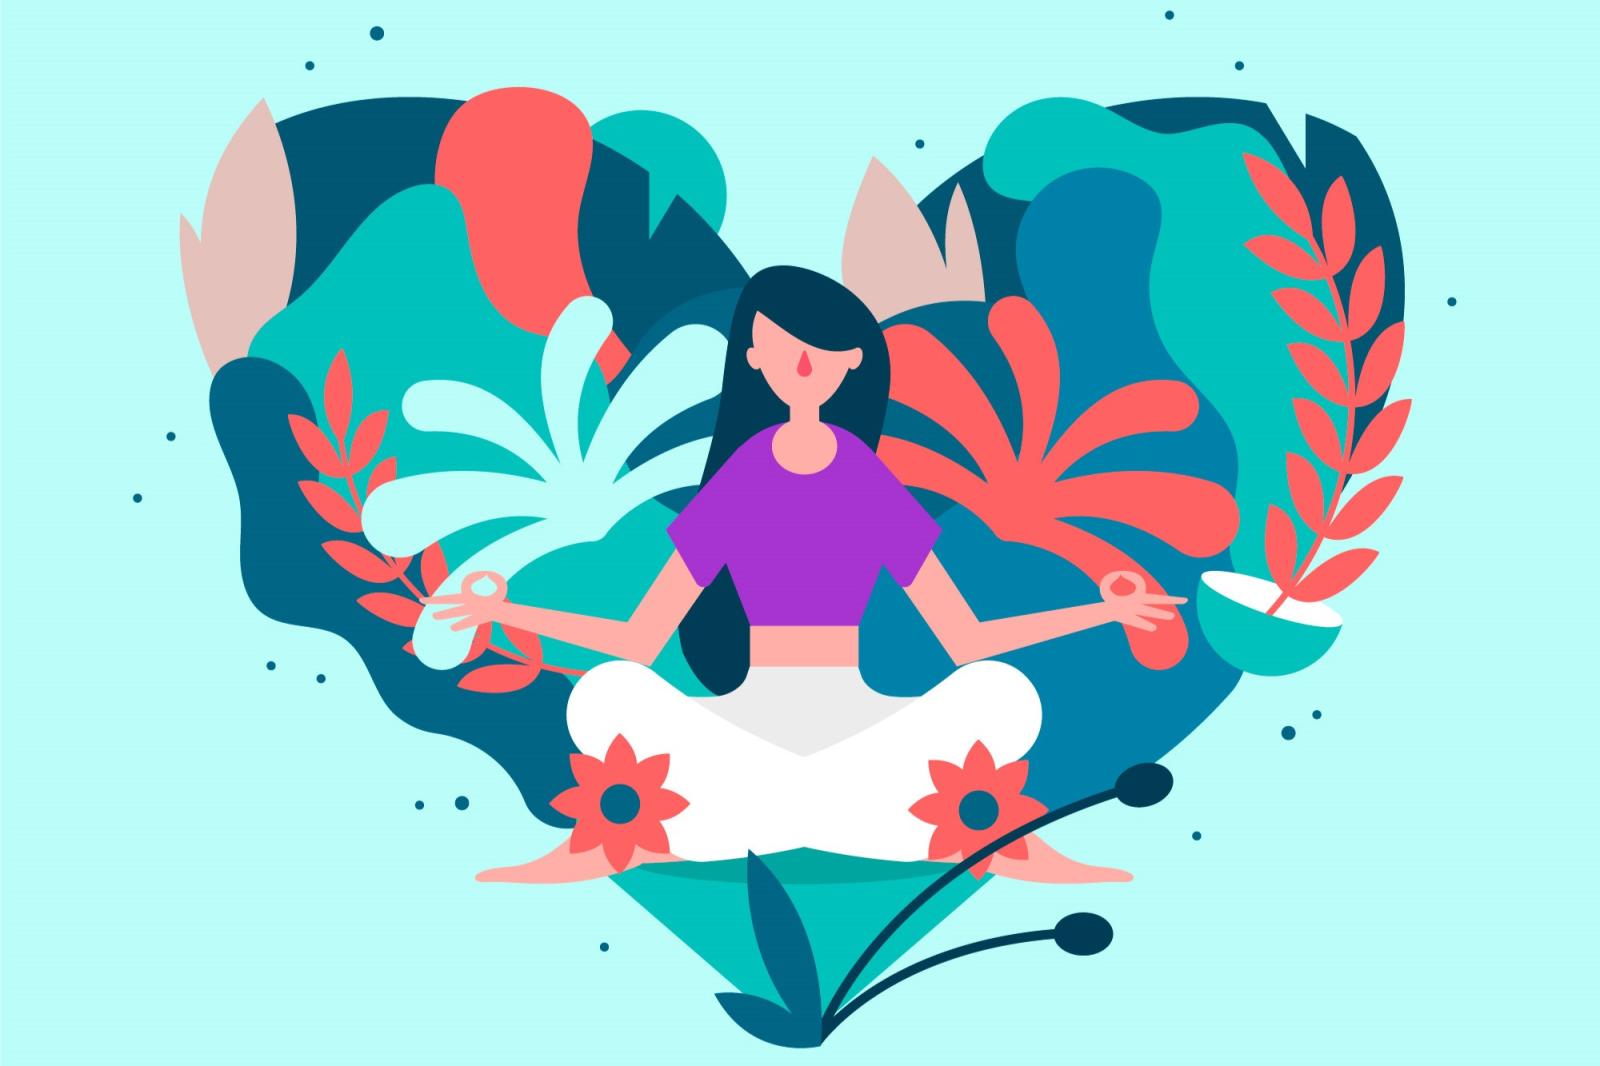 Una ragazza nella posizione yoga del fior di loto è seduta sullo sfondo di un cuore composto da fiori e foglie